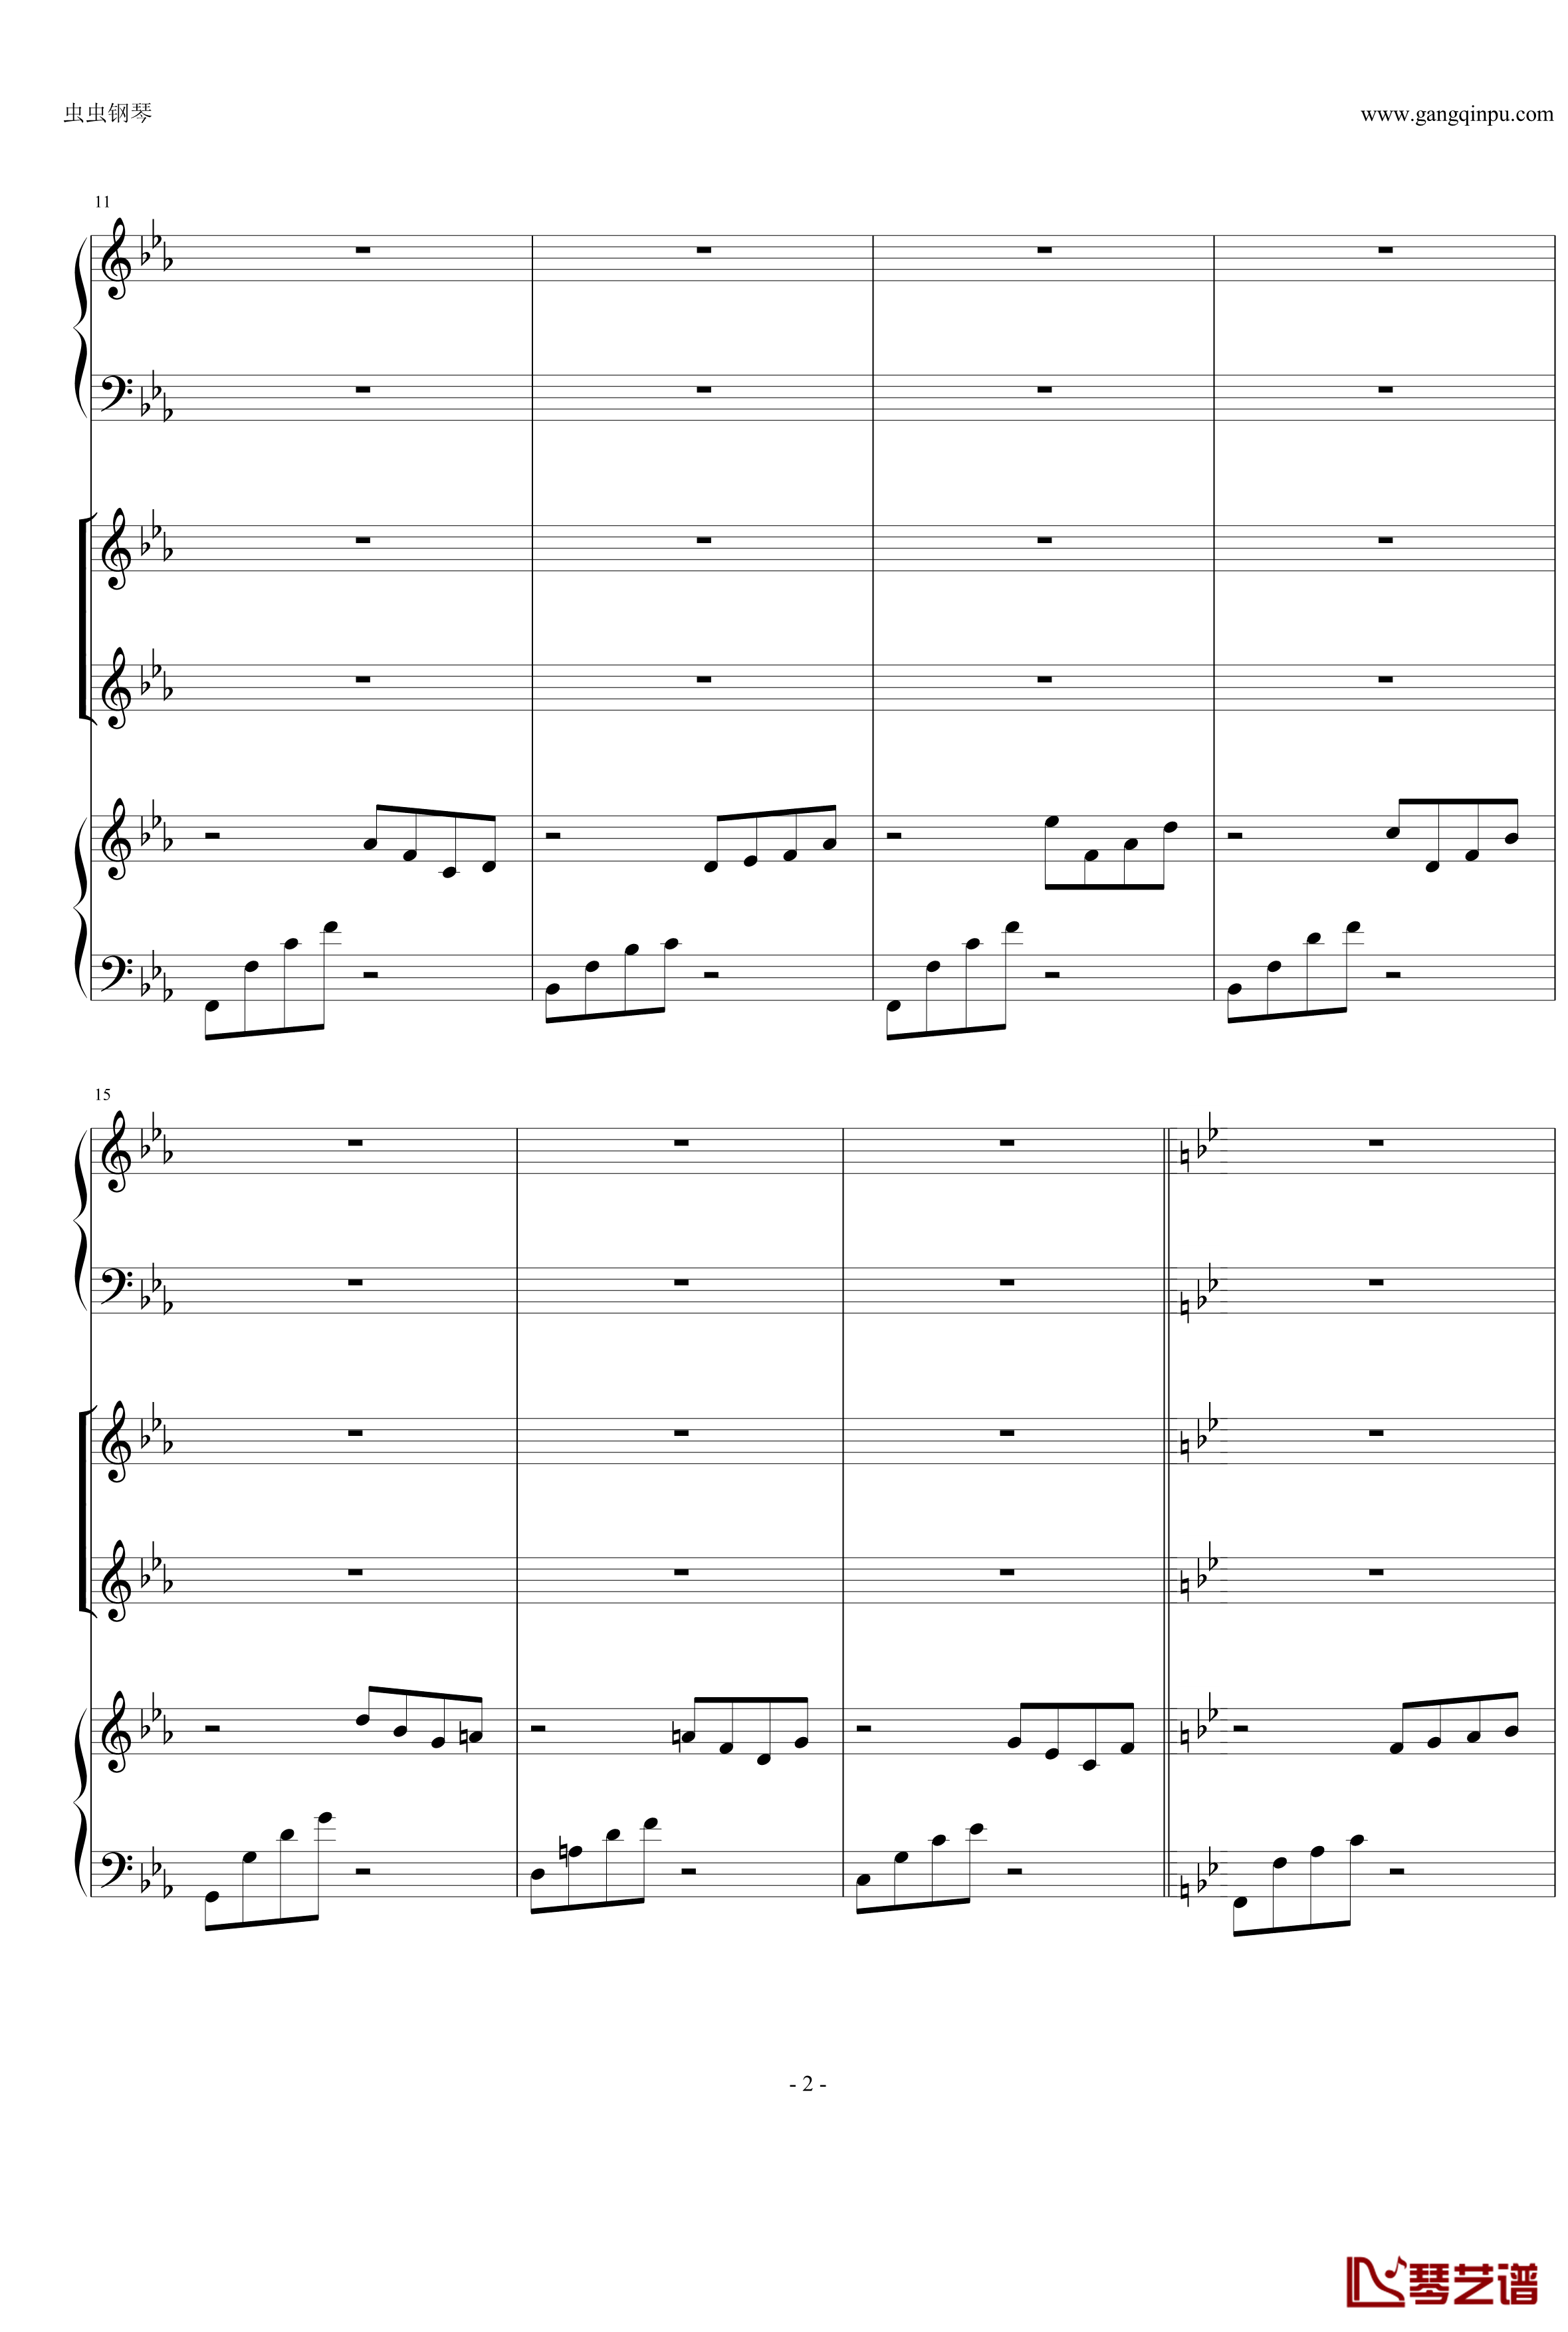 Anymusic钢琴谱-机械乐器乐-第三乐章2